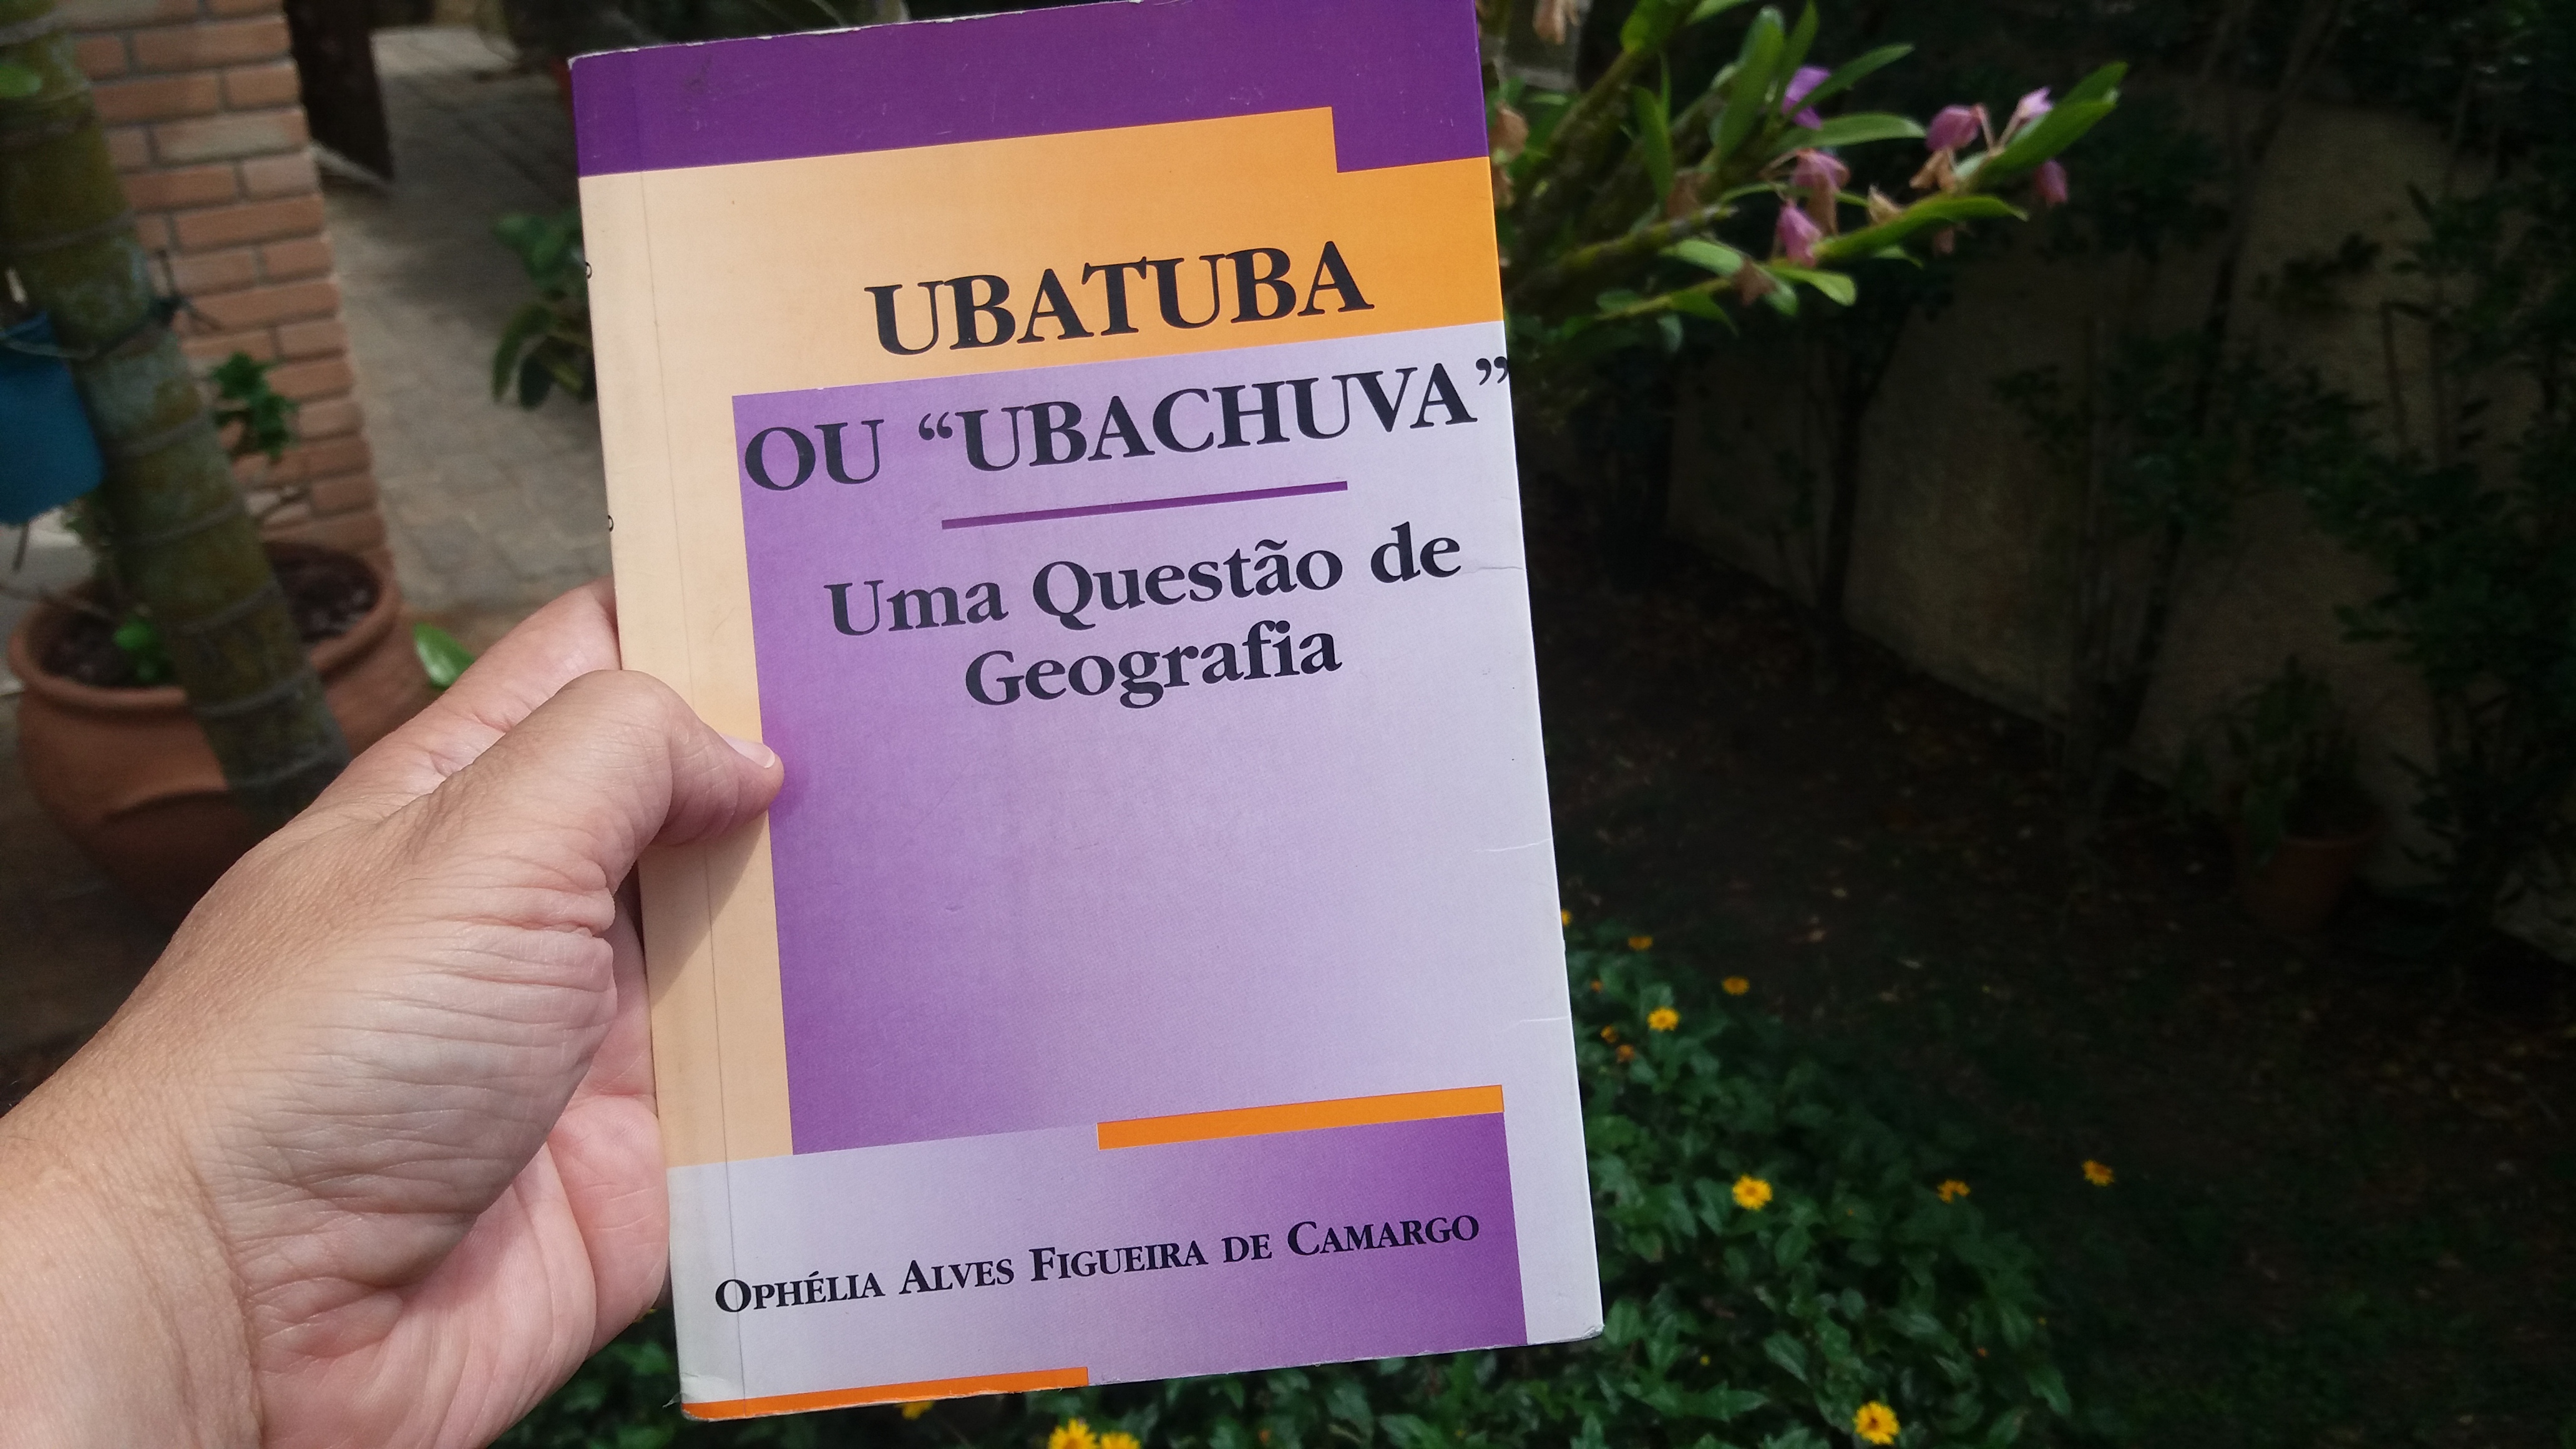 Ubatuba ou “Ubachuva” – Uma Questão de Geografia